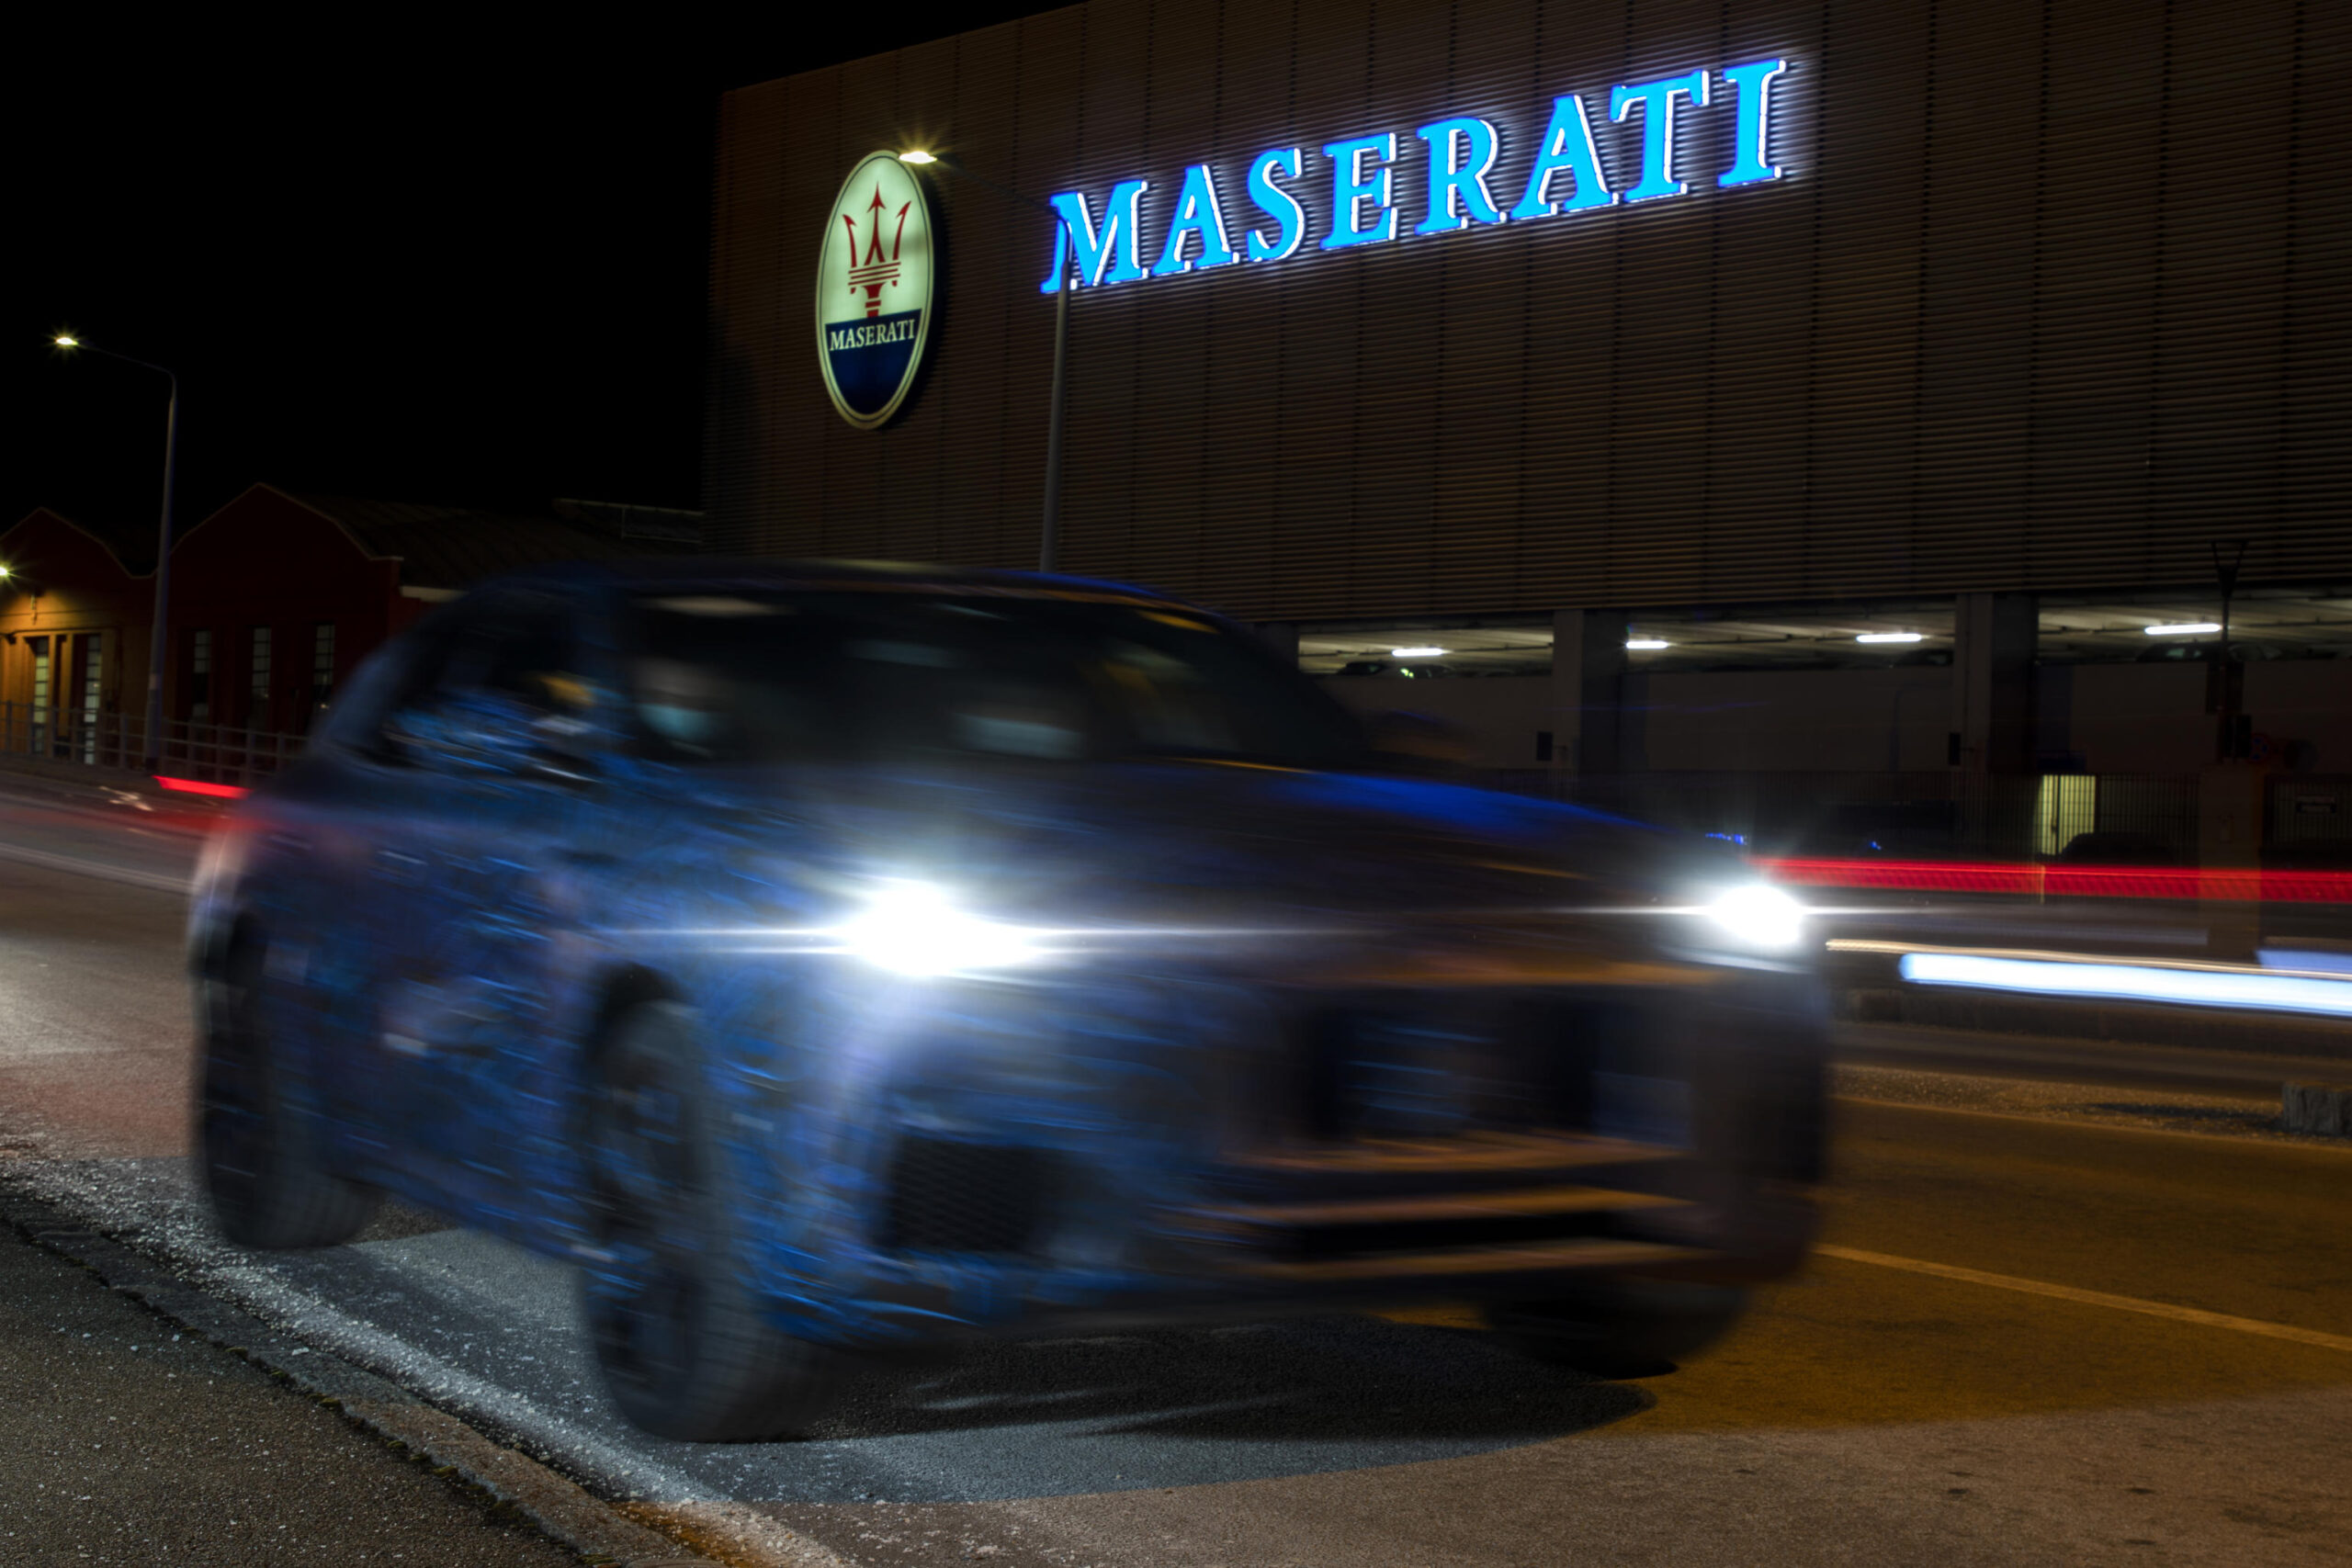 Ufficio Stampa Maserati